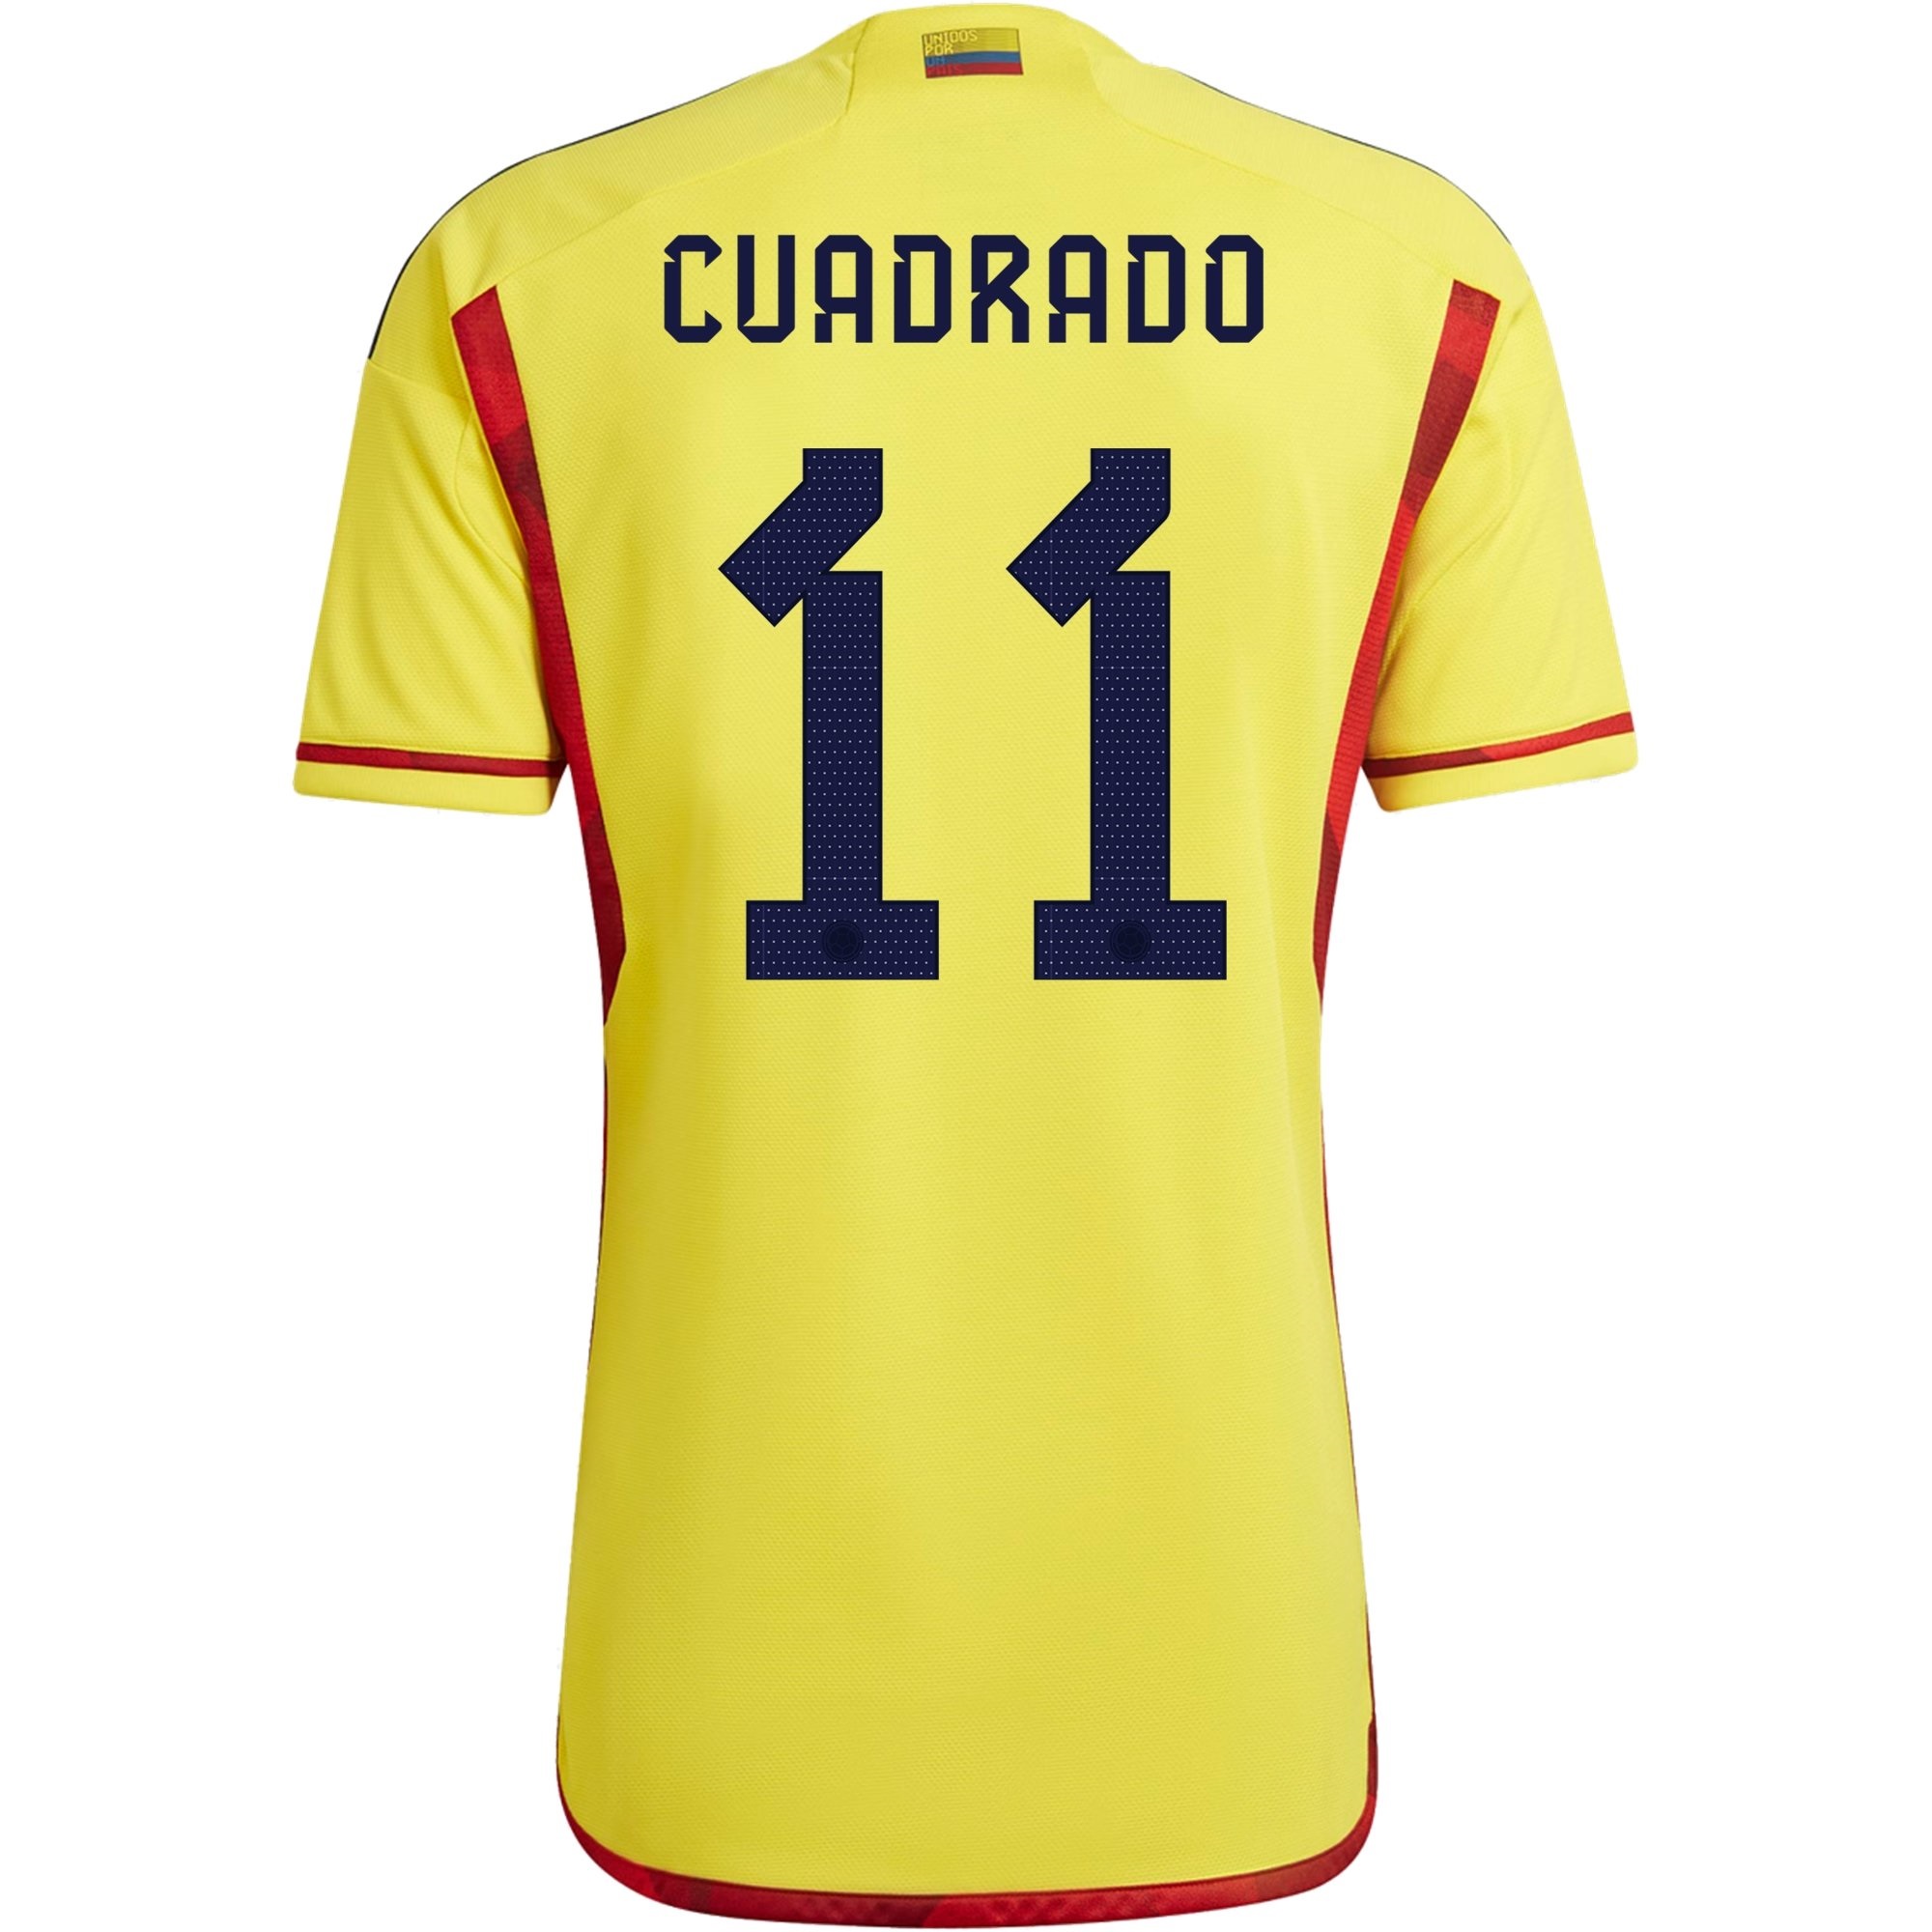 Juan Cuadrado's retro Colombia kit